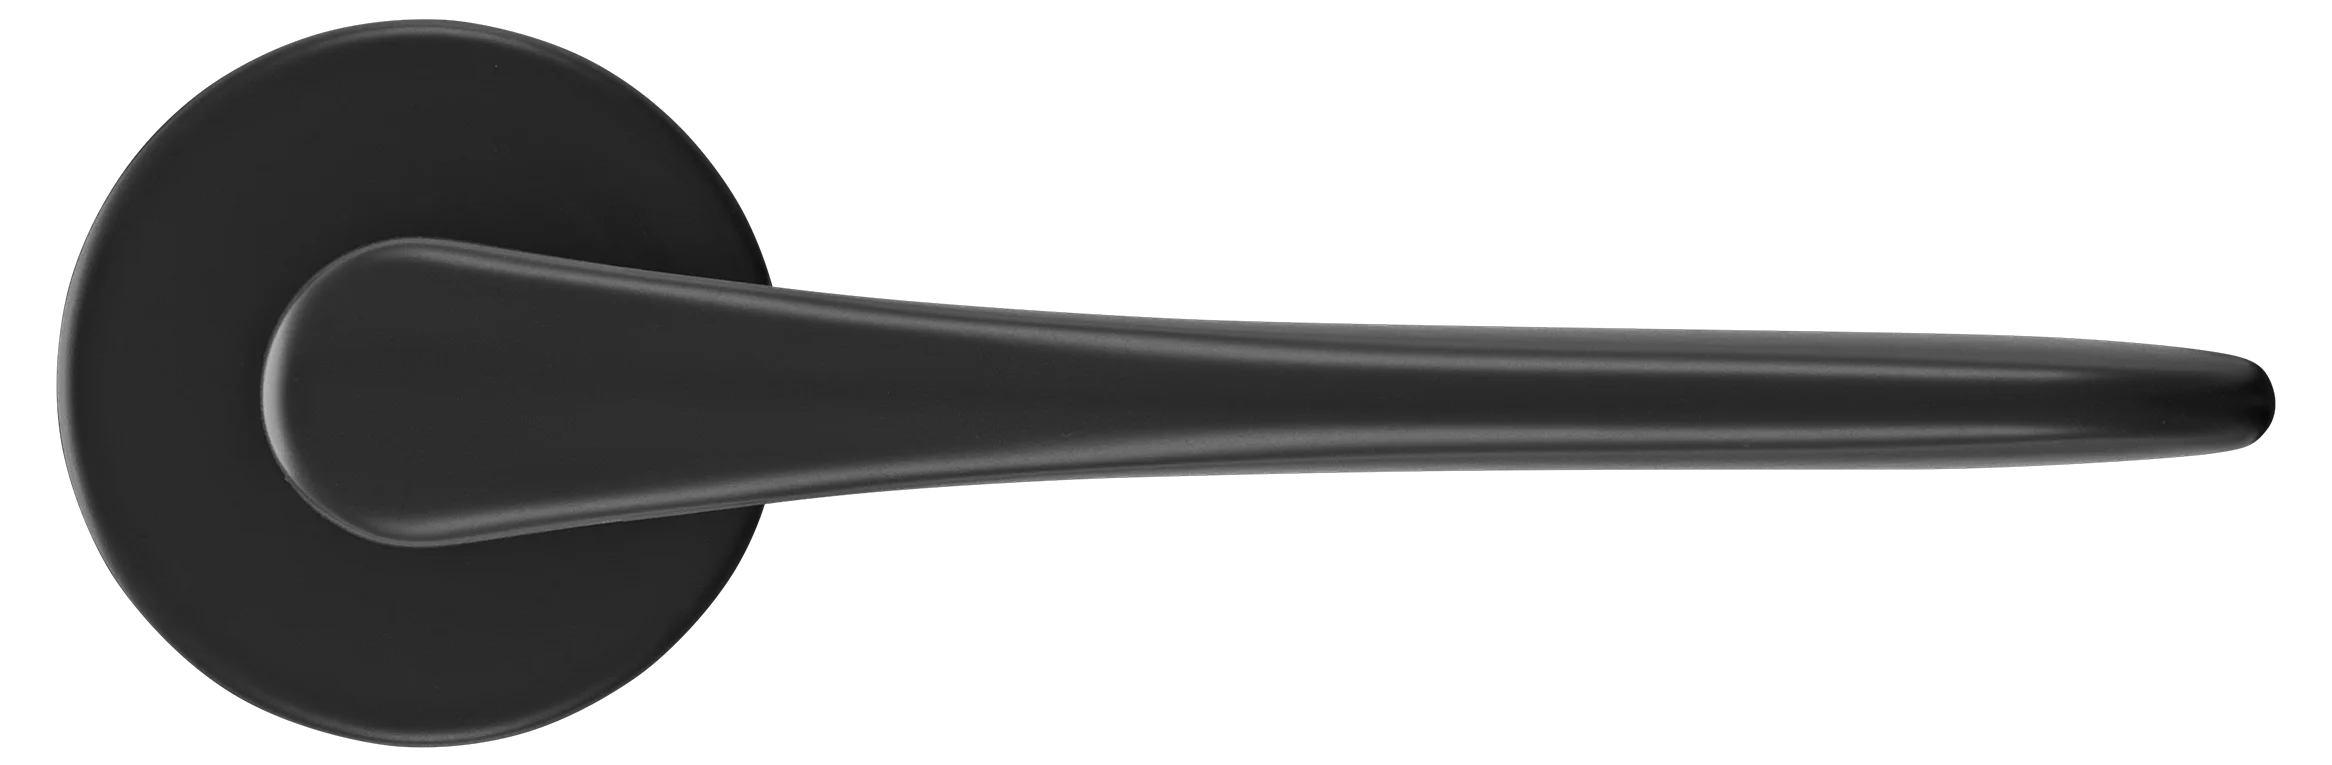 AULA R5 NERO, ручка дверная на розетке 7мм, цвет -  черный фото купить в Твери